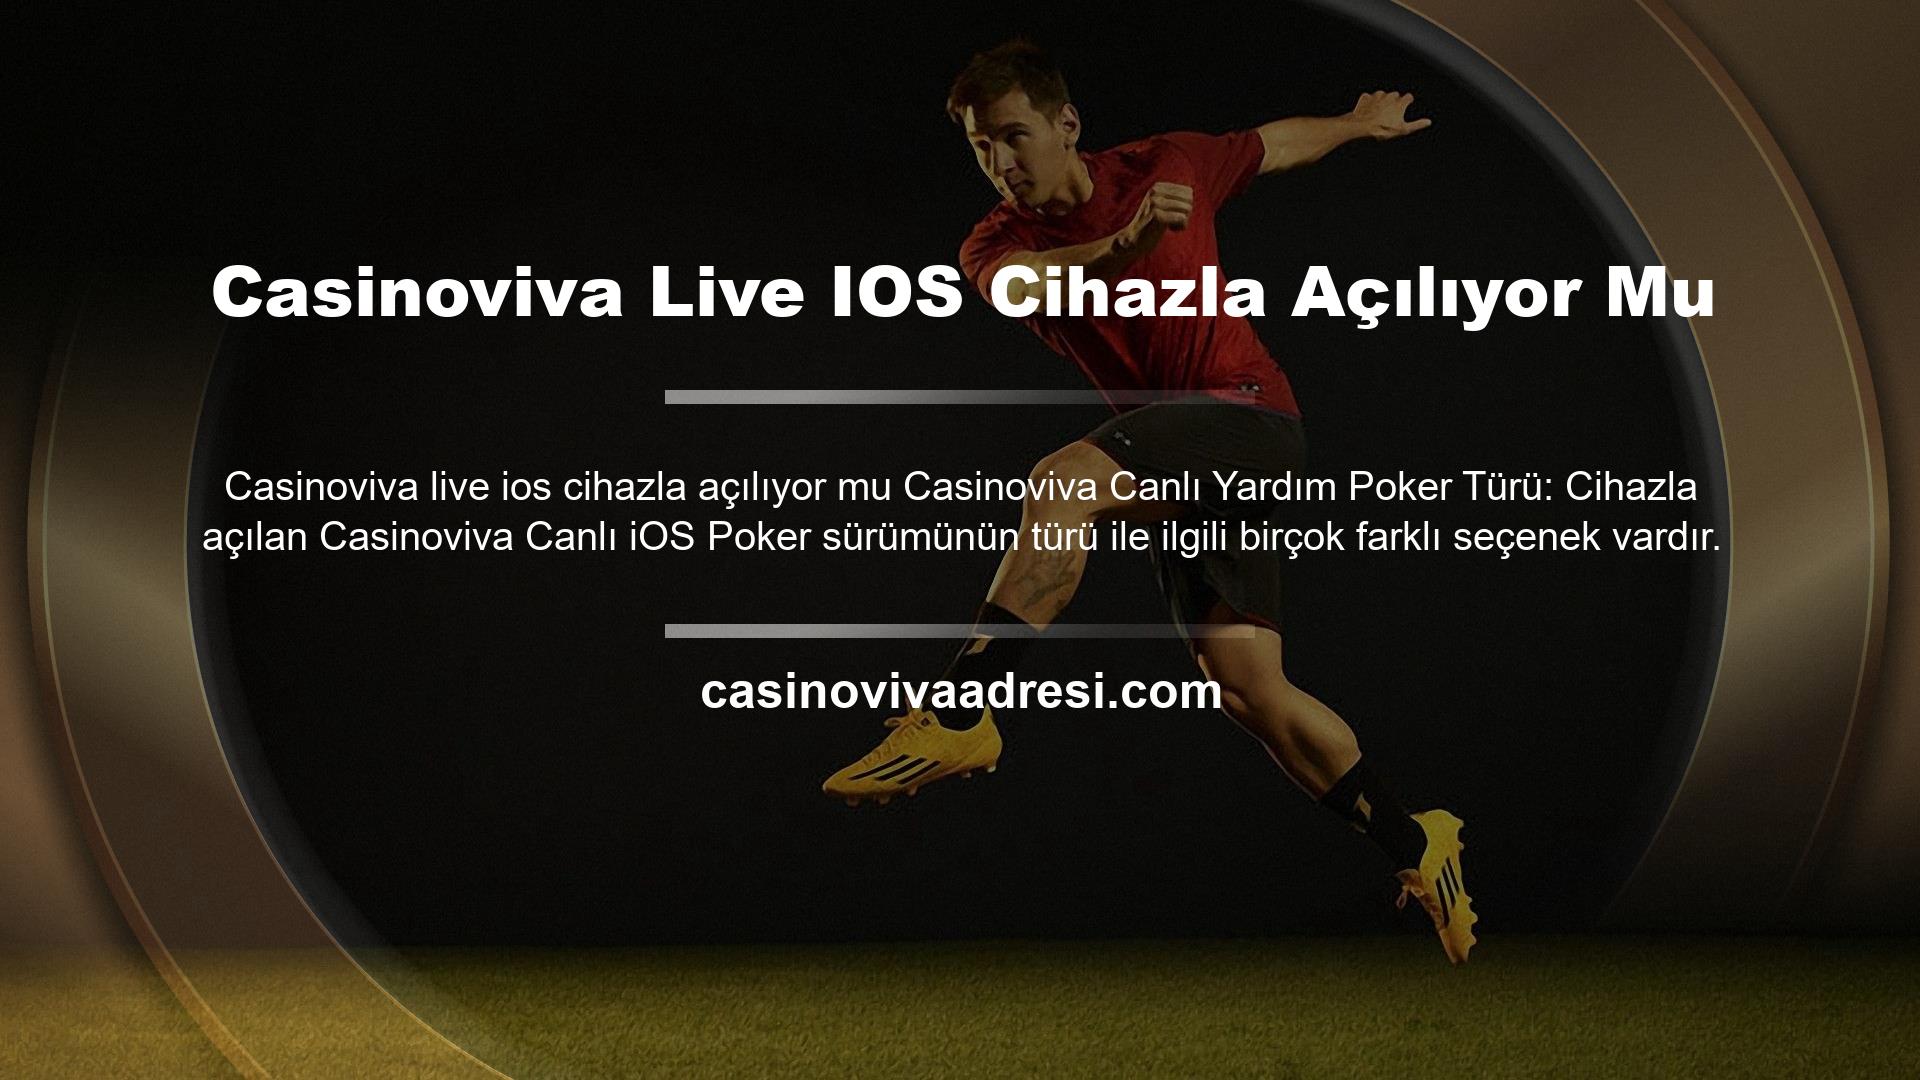 Casinoviva Live IOS Cihazla Açılıyor Mu